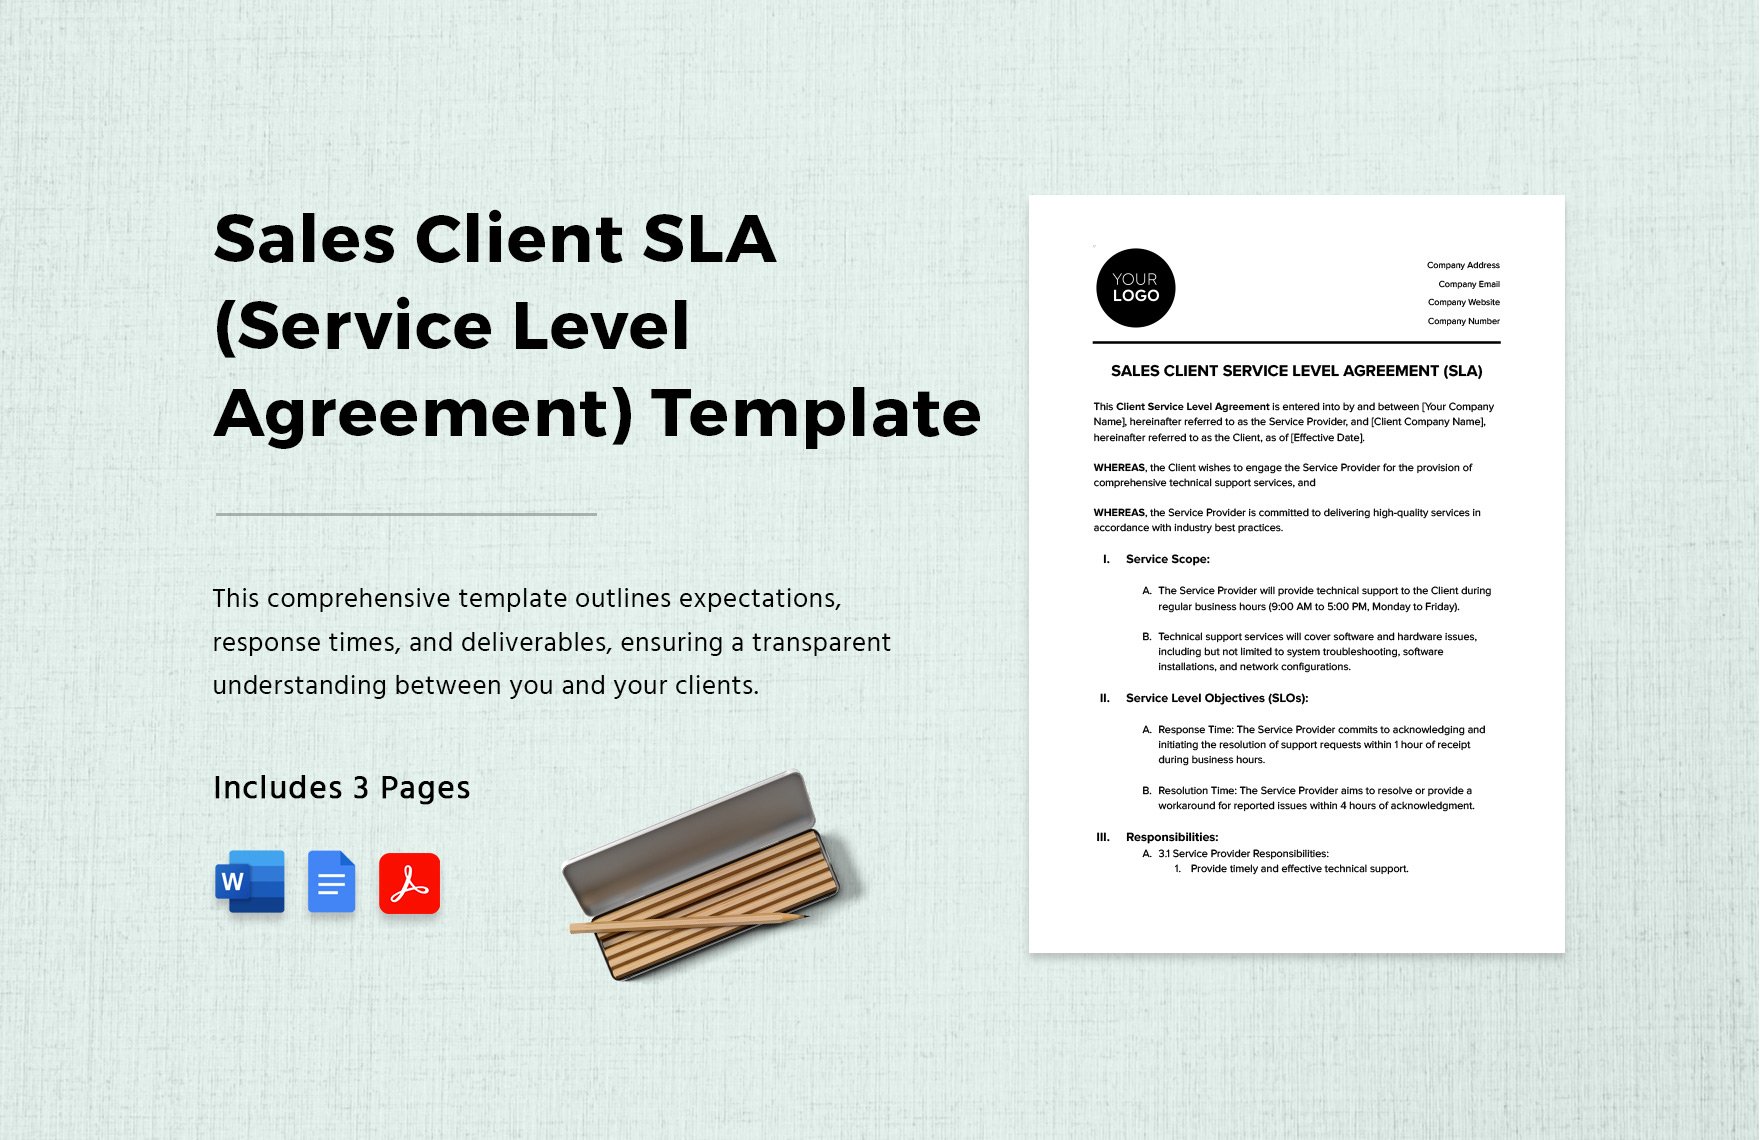 Sales Client SLA (Service Level Agreement) Template